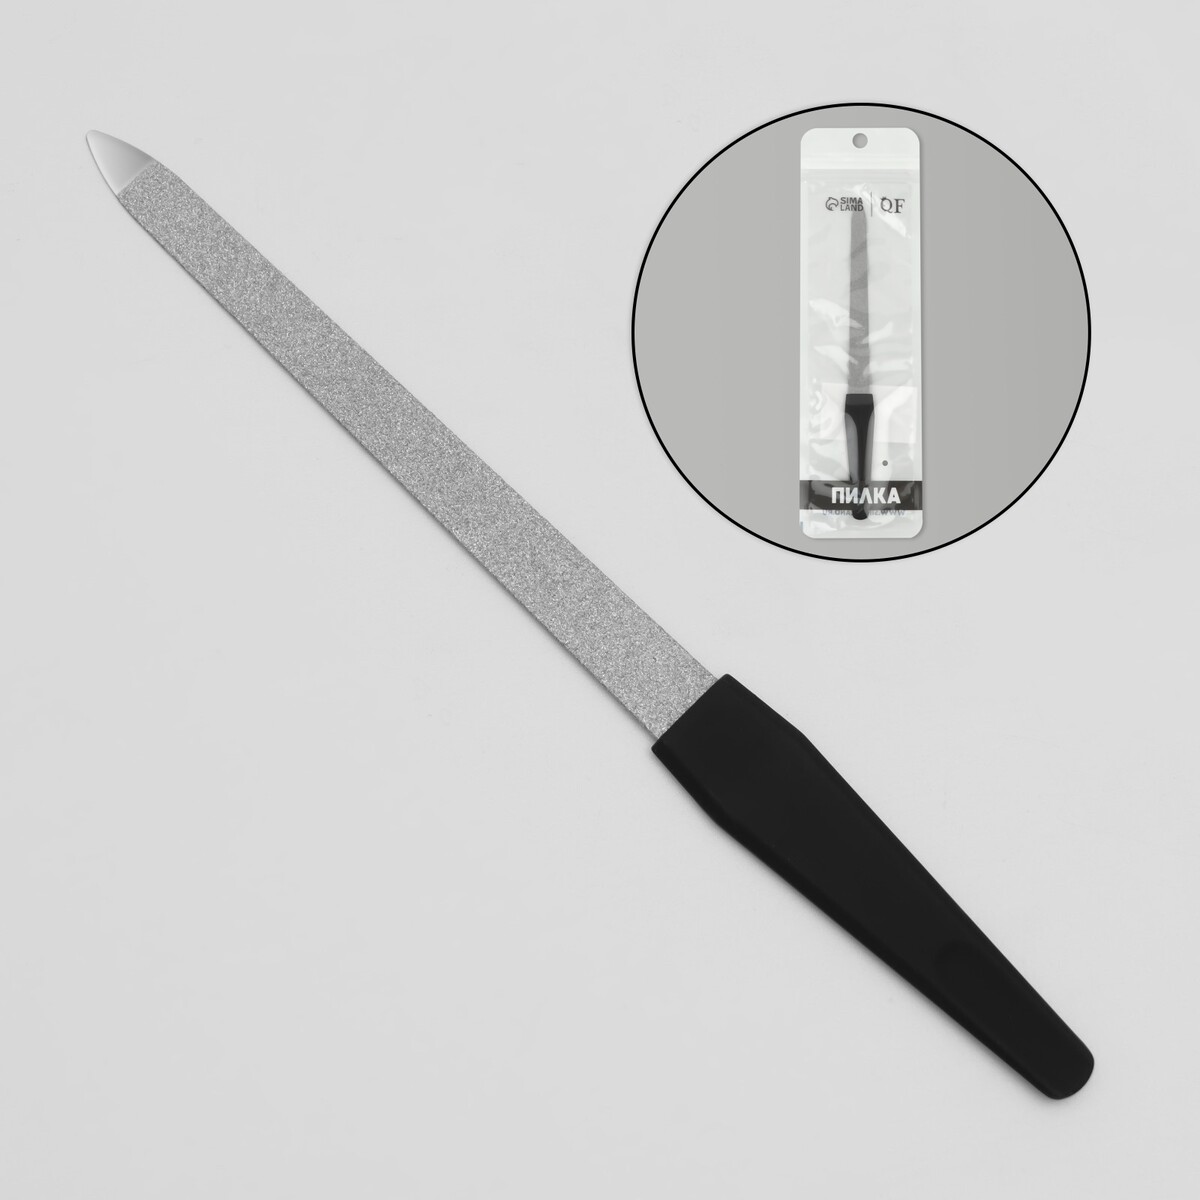 Пилка металлическая для ногтей, прорезиненная ручка, 17 см, цвет серебристый/черный пилка сапфировая для ногтей 13 см zwilling twinox